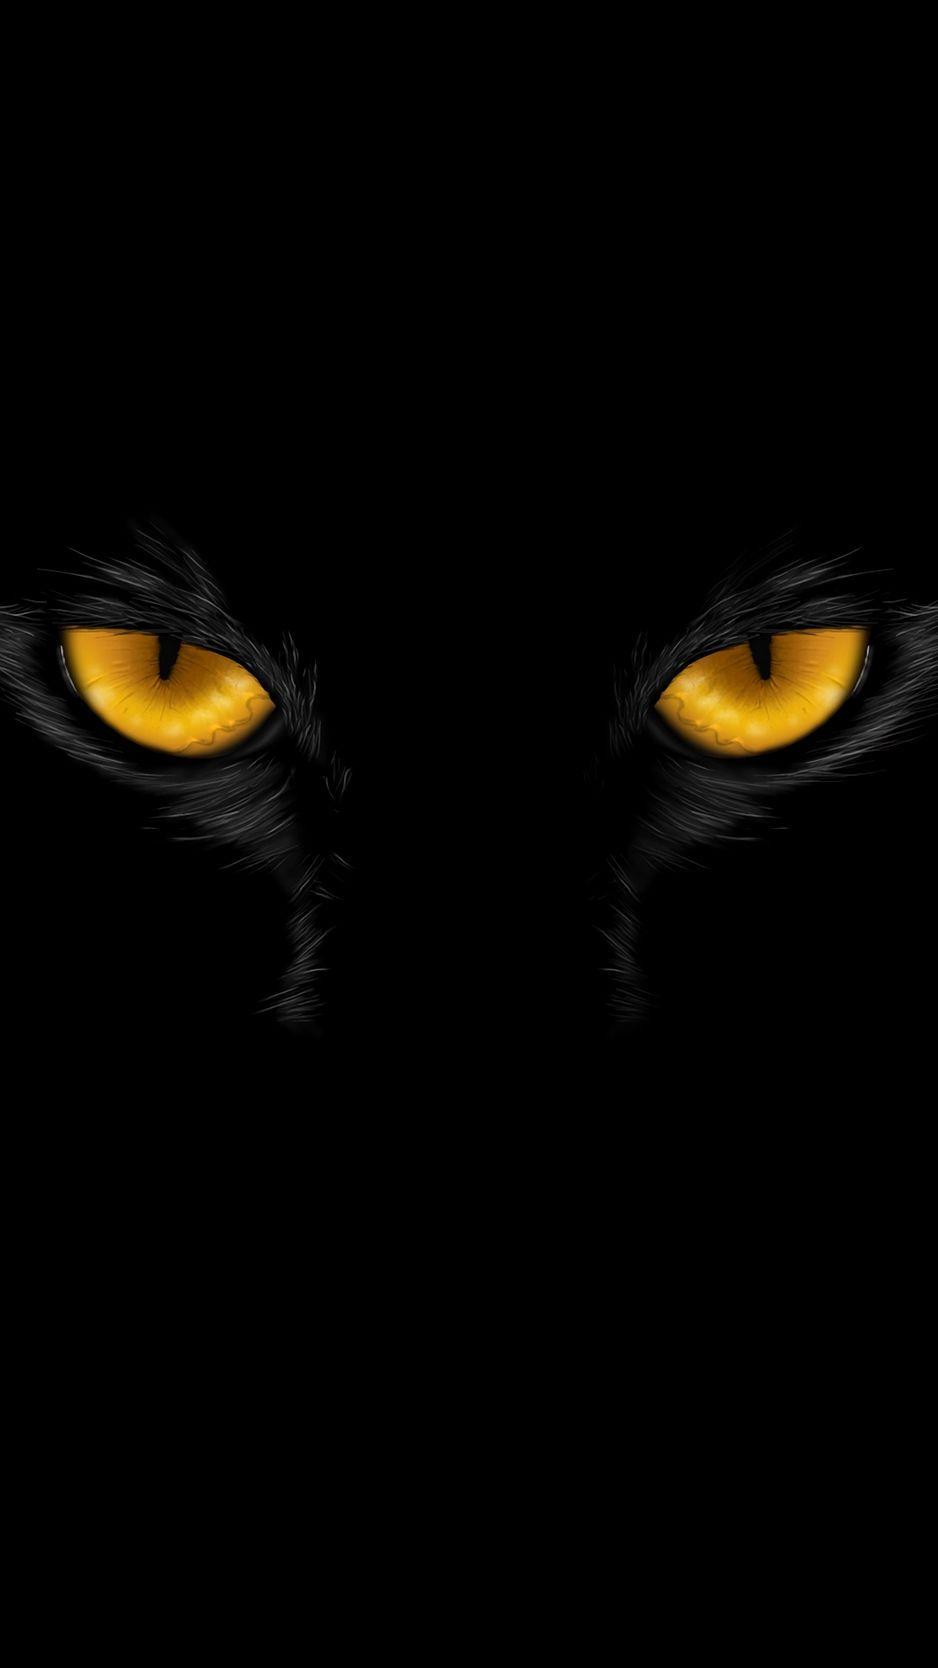 Black Panther Eyes Wallpapers - Top Free Black Panther Eyes Backgrounds - WallpaperAccess